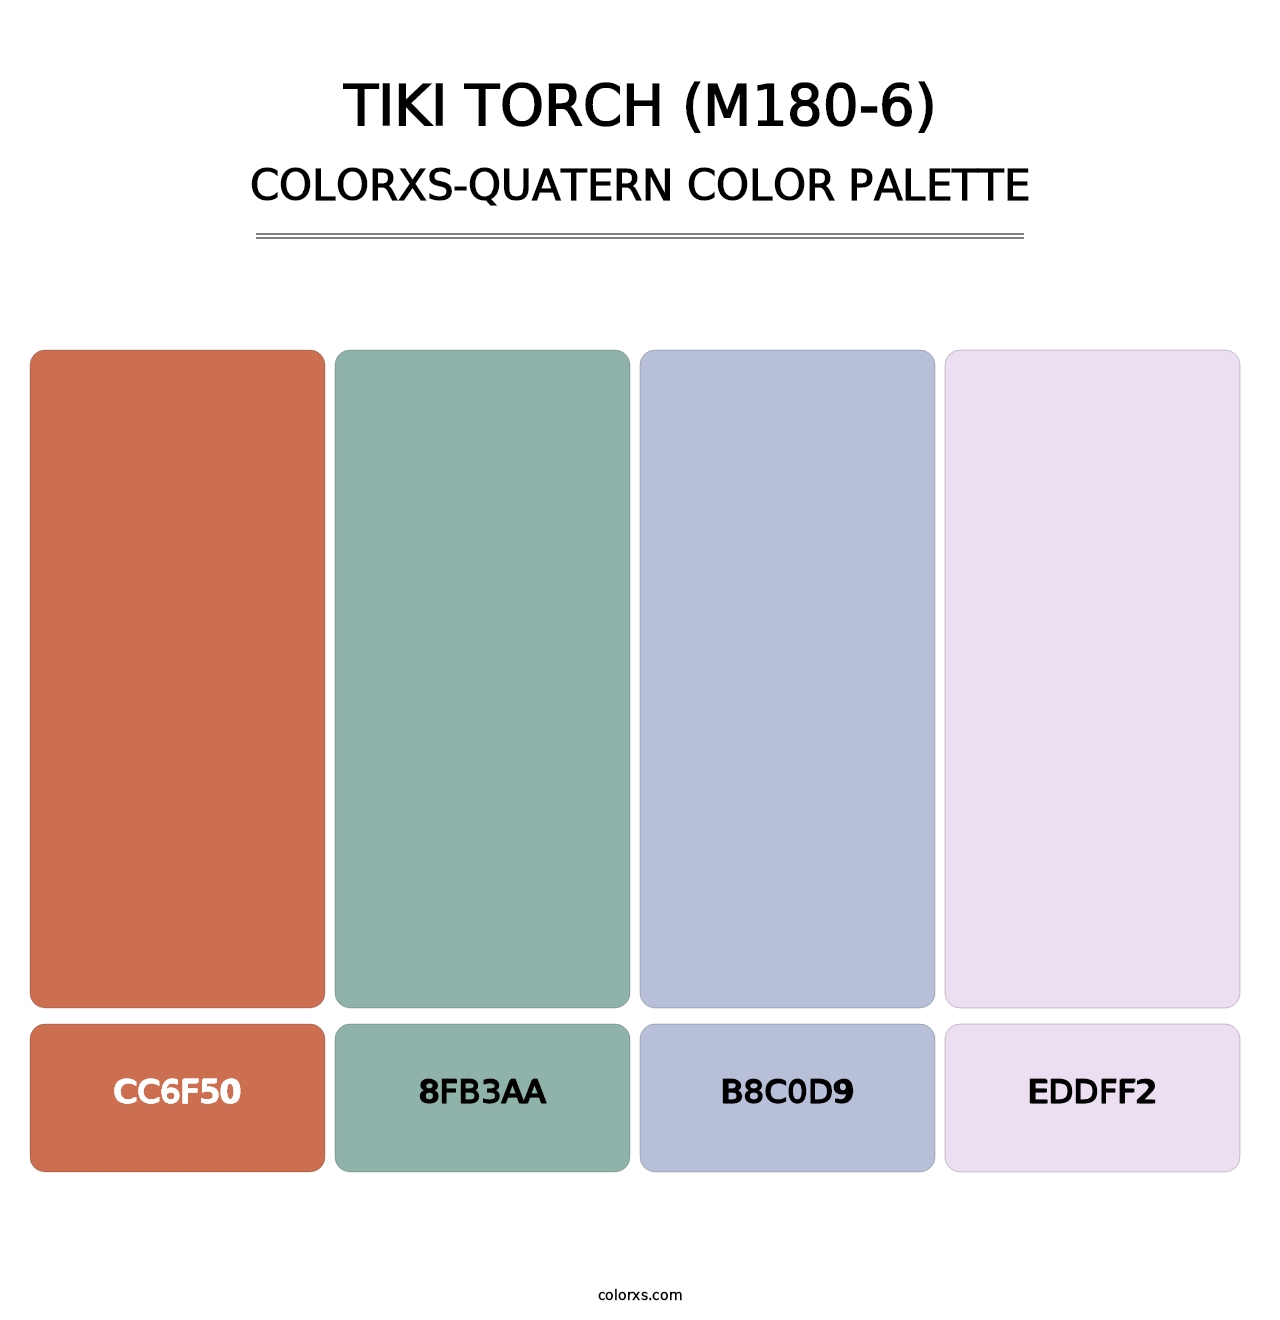 Tiki Torch (M180-6) - Colorxs Quatern Palette